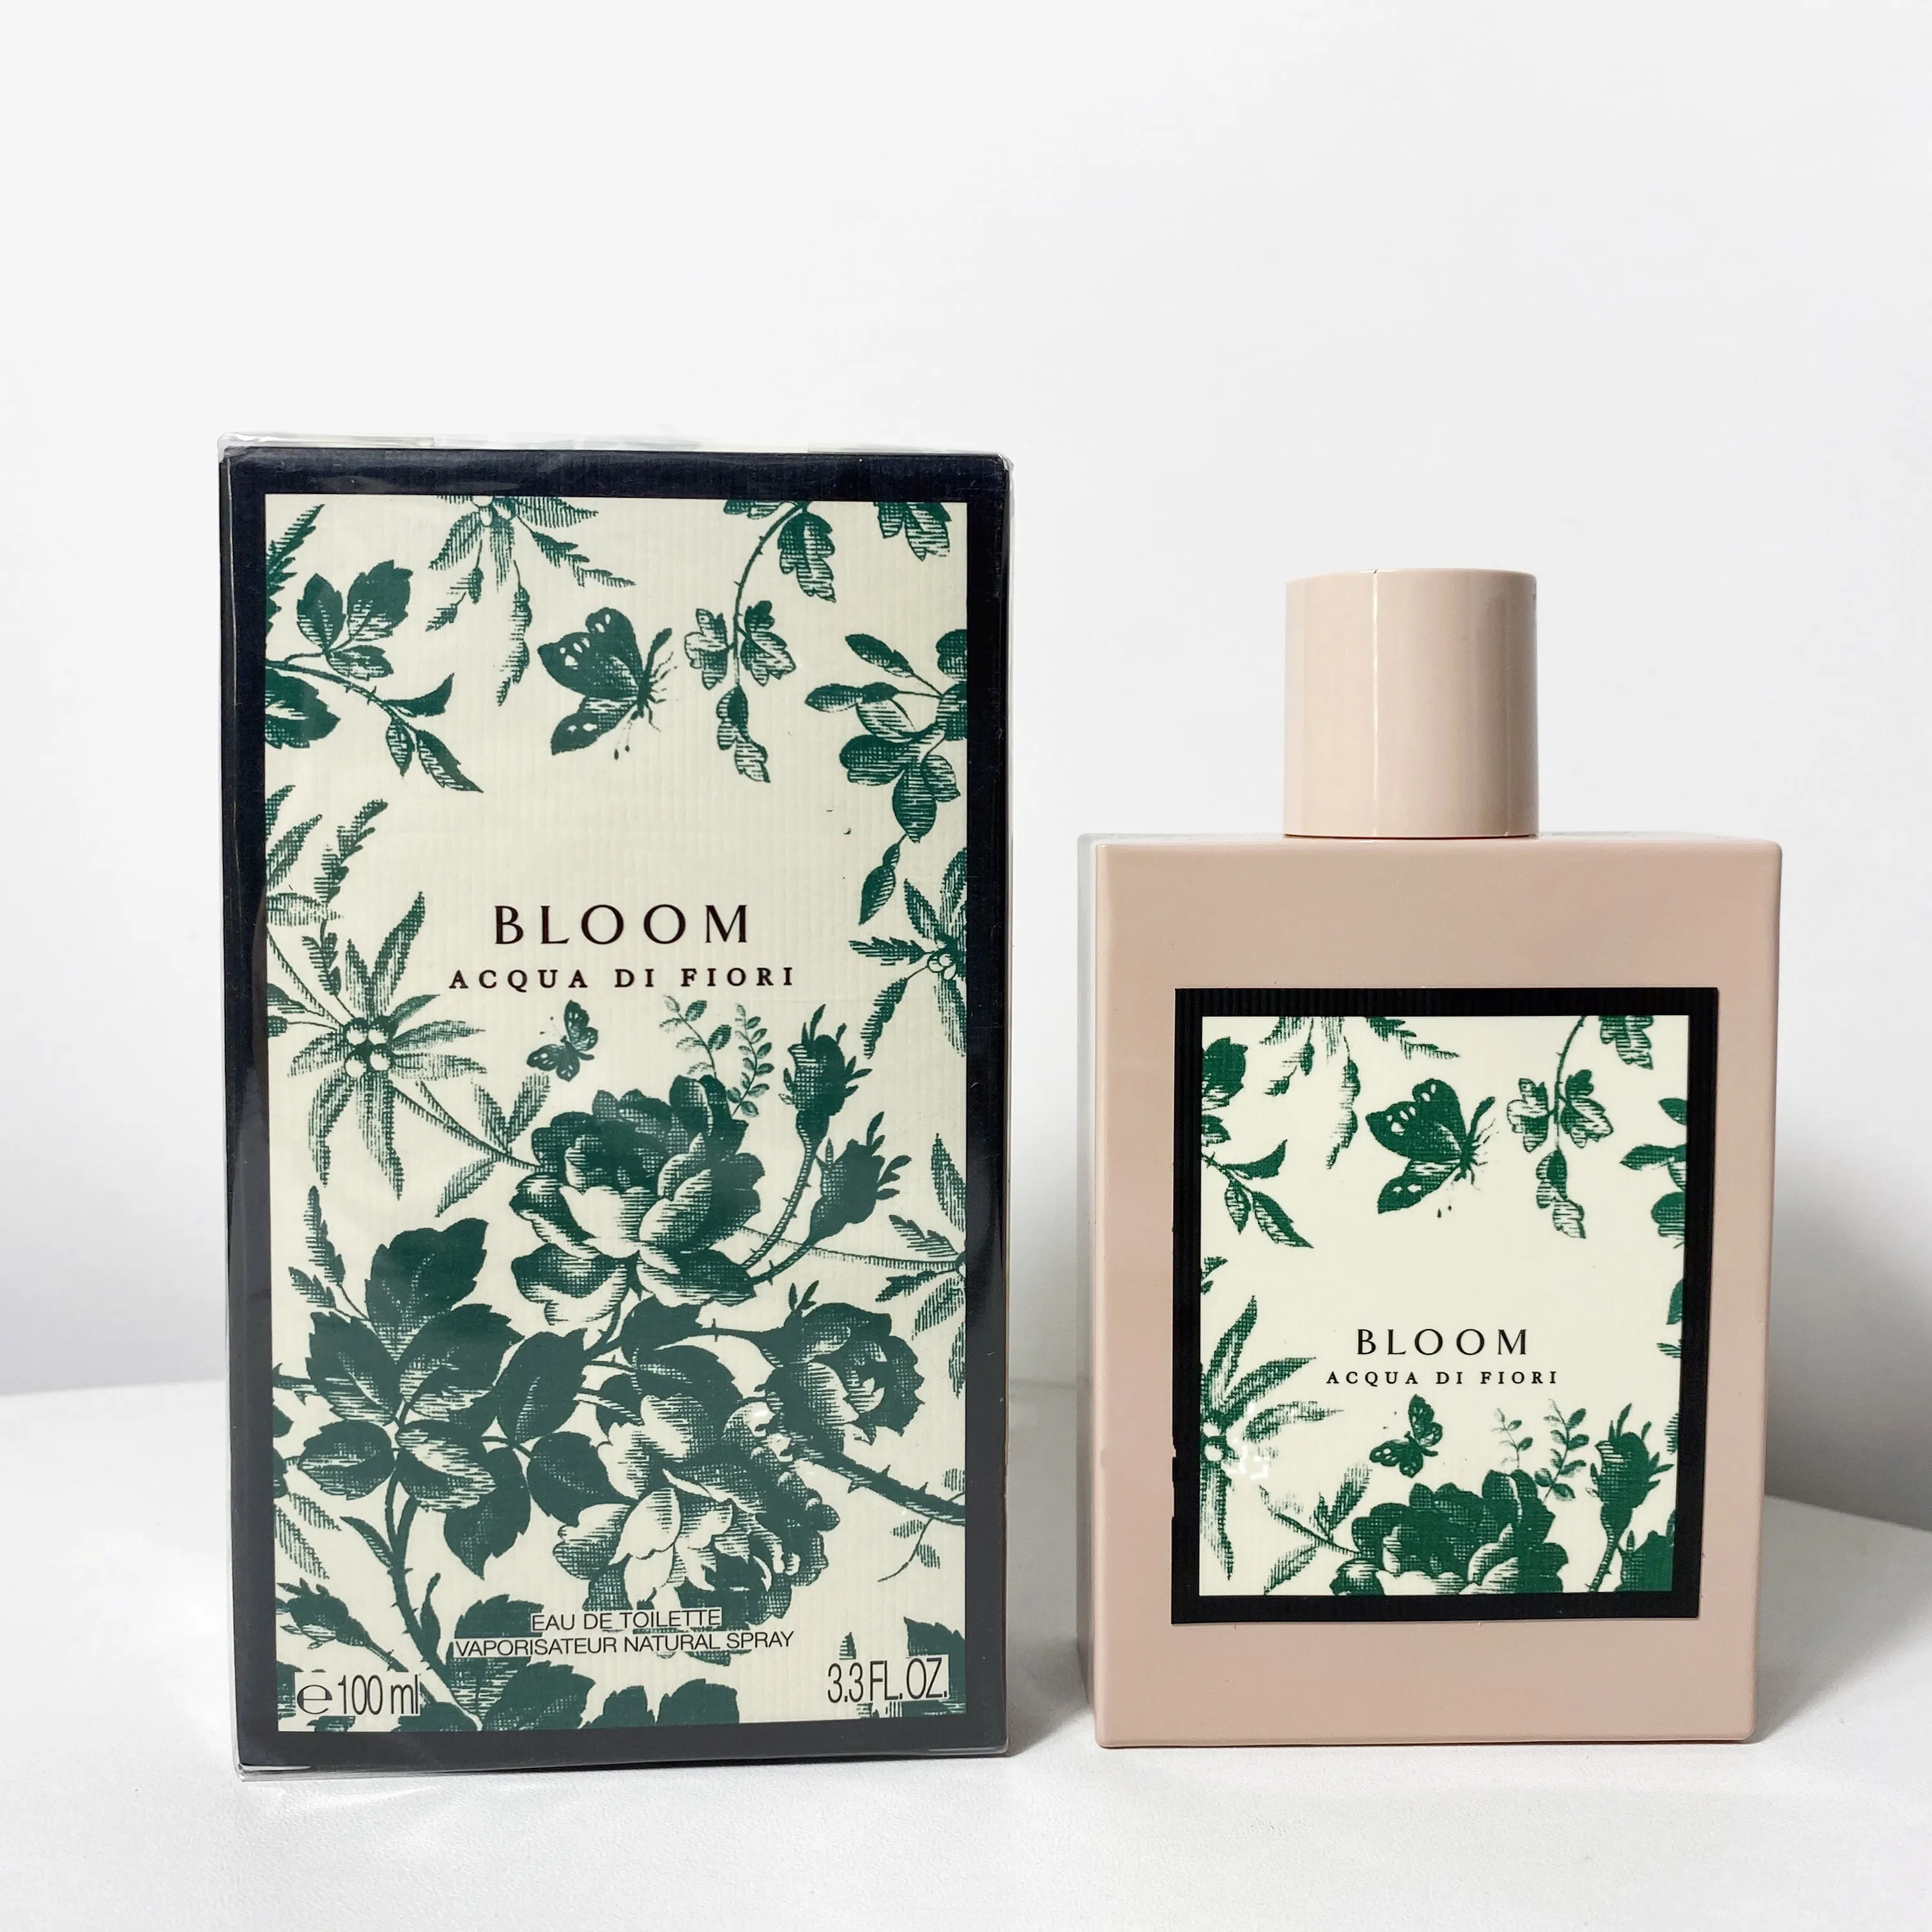 Hot Brand Bloom Acqua di fiori Perfumes originais para mulheres Sexy Lady Lady Parfume Woman Col￴nia Desodorante Sp￣o